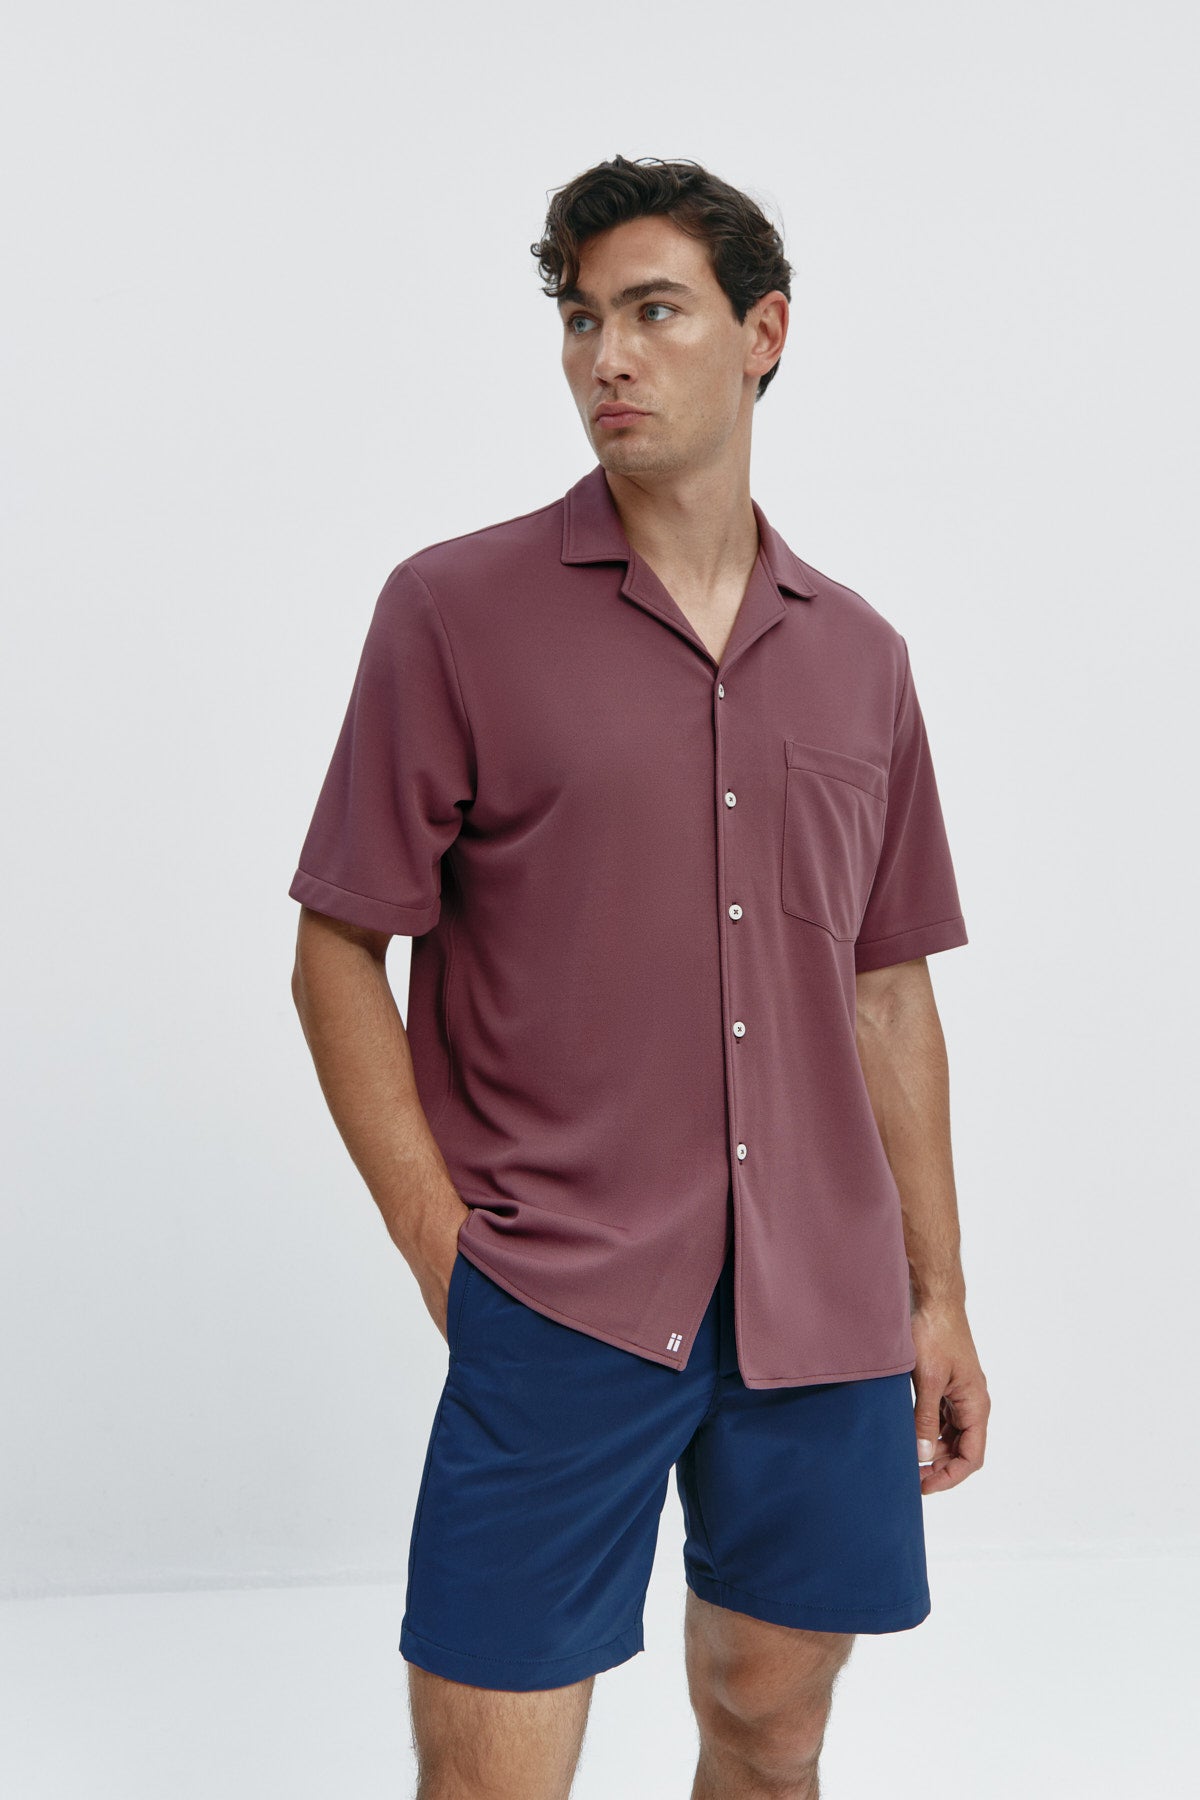 Camisa manga corta sedna de Sepiia, fresca y elegante, perfecta para el verano. Foto flexibilidad